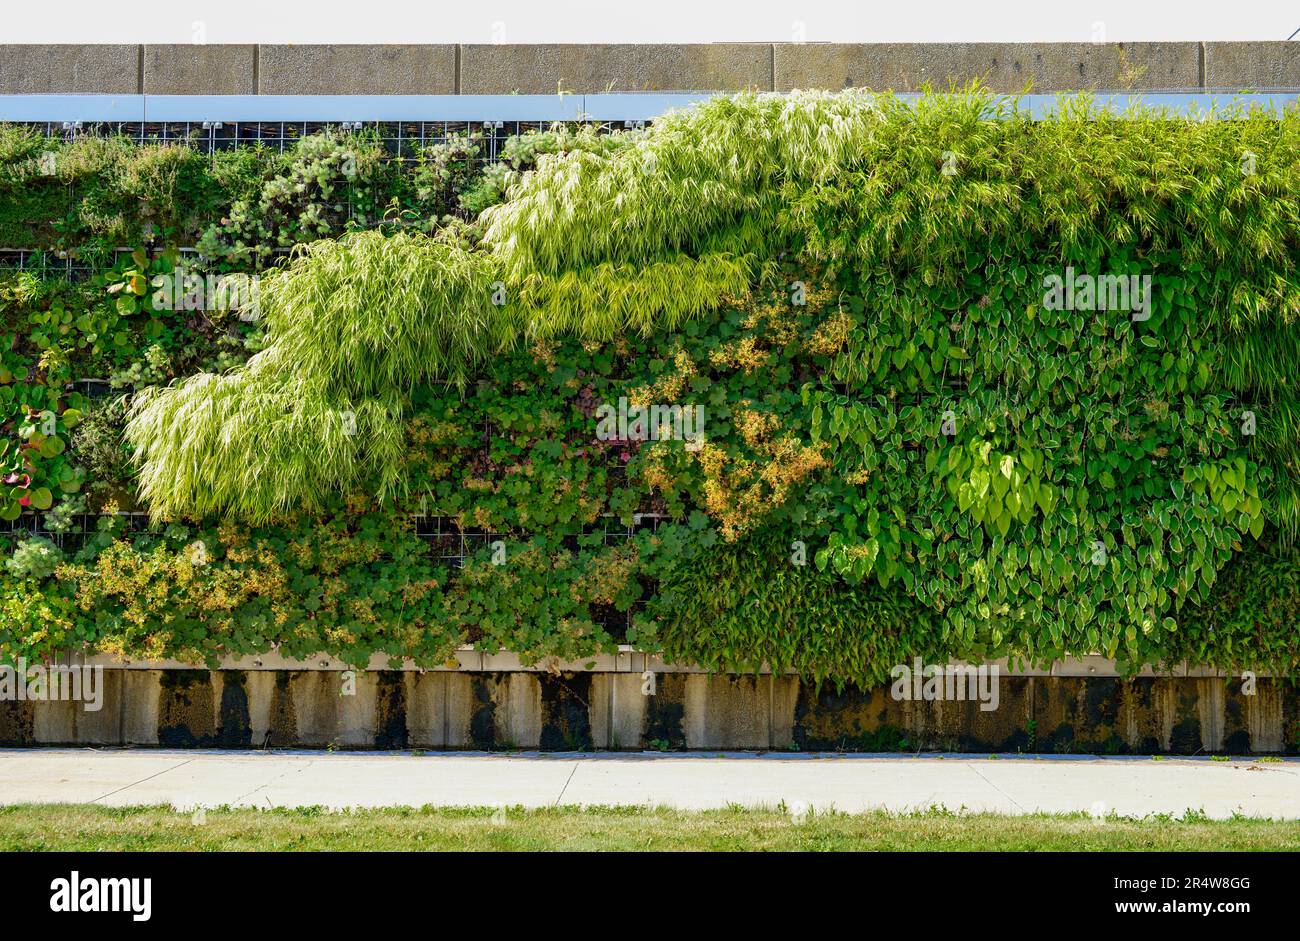 Mur vivant extérieur dans un climat froid sur un mur vertical d'un bâtiment. La structure haute est couverte de verdure grimpante, de plantes, de fougères et de flore. Banque D'Images